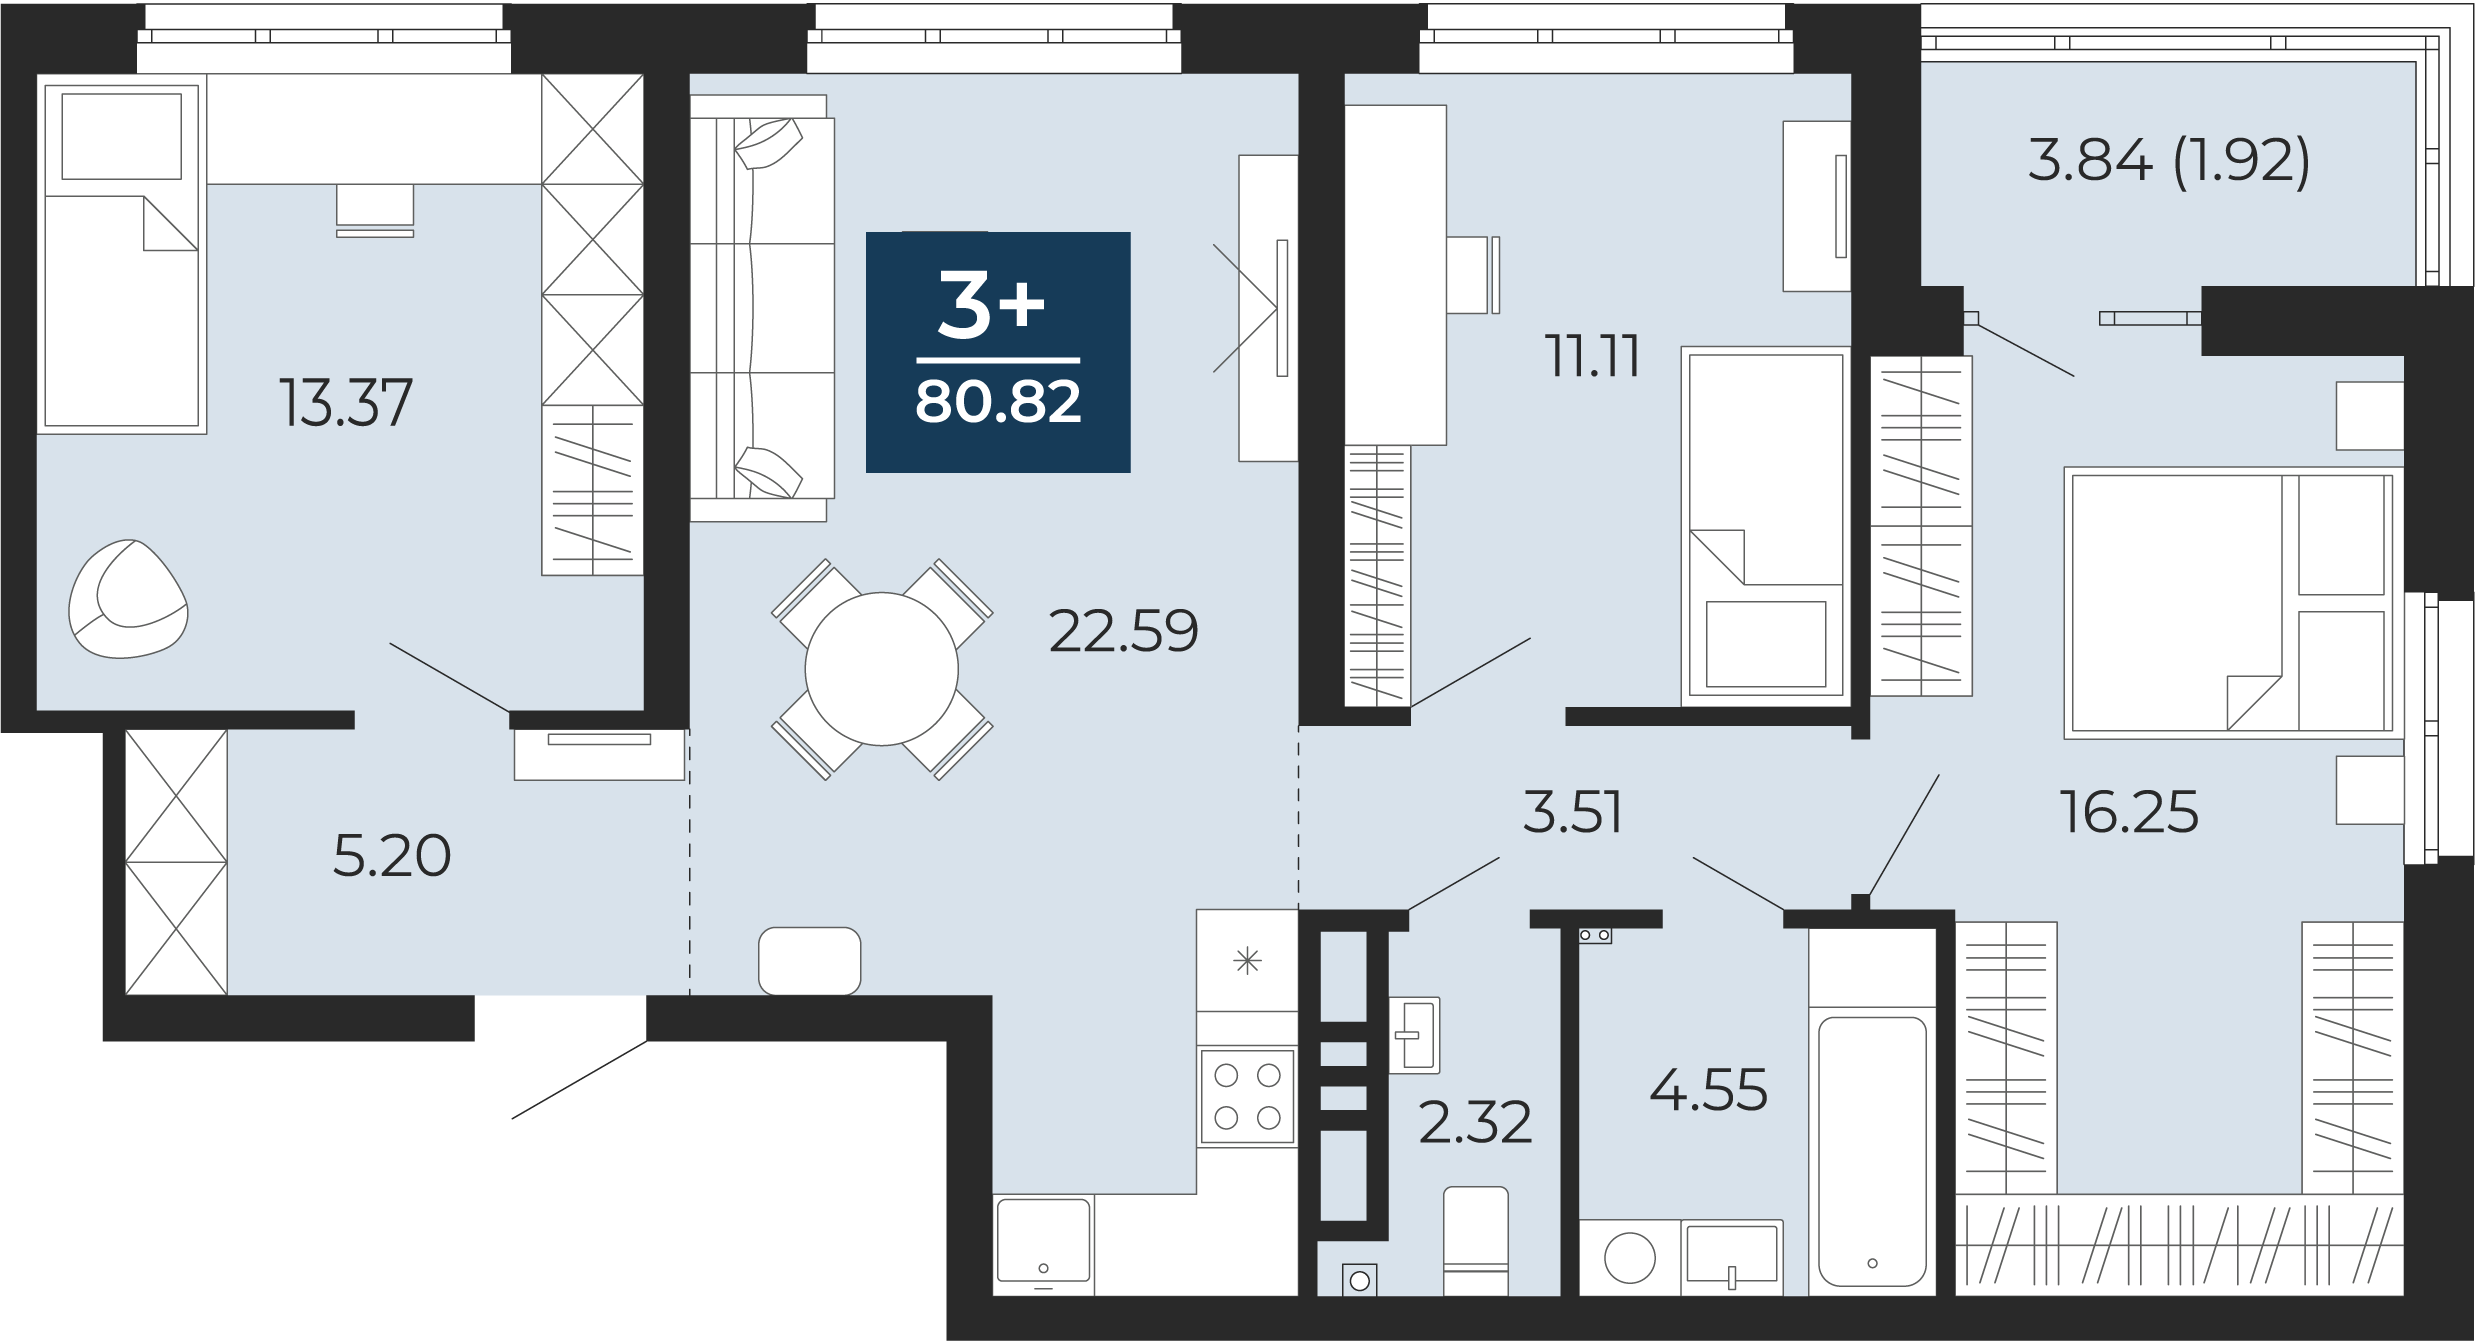 Квартира № 421, 3-комнатная, 80.82 кв. м, 14 этаж